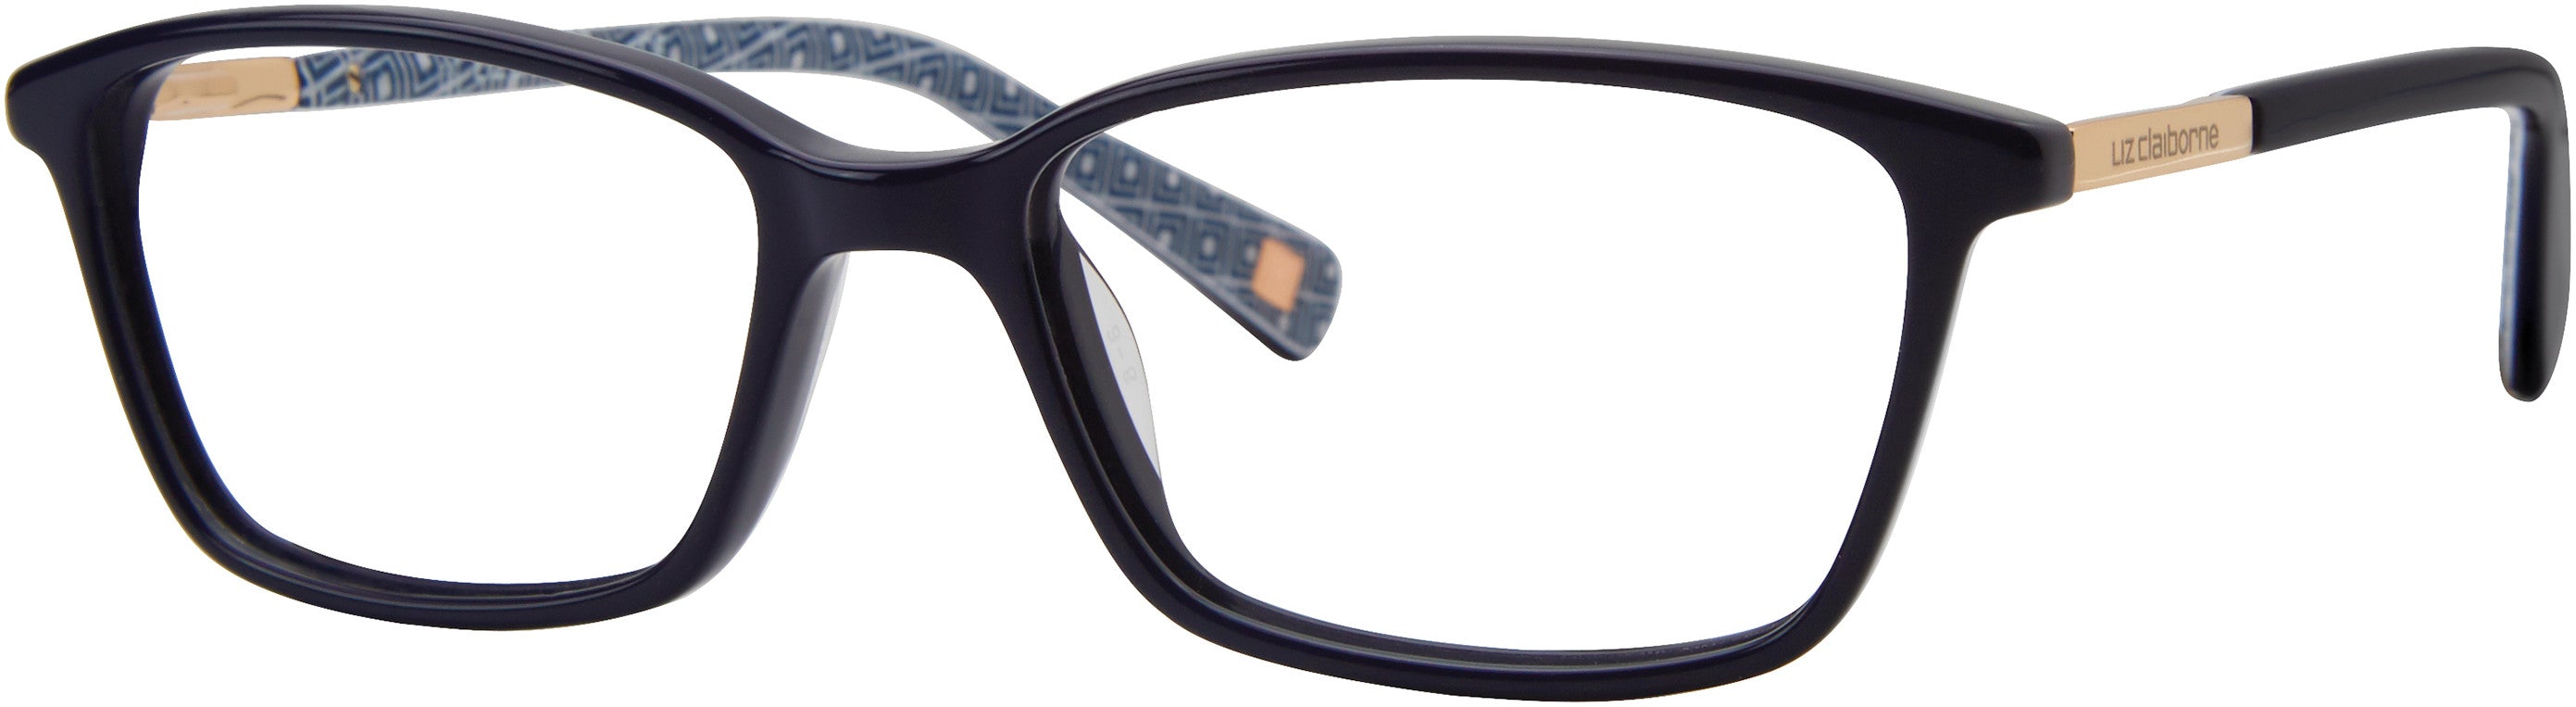  Liz Claiborne 448 Rectangular Eyeglasses 0PJP-0PJP  Blue (00 Demo Lens)